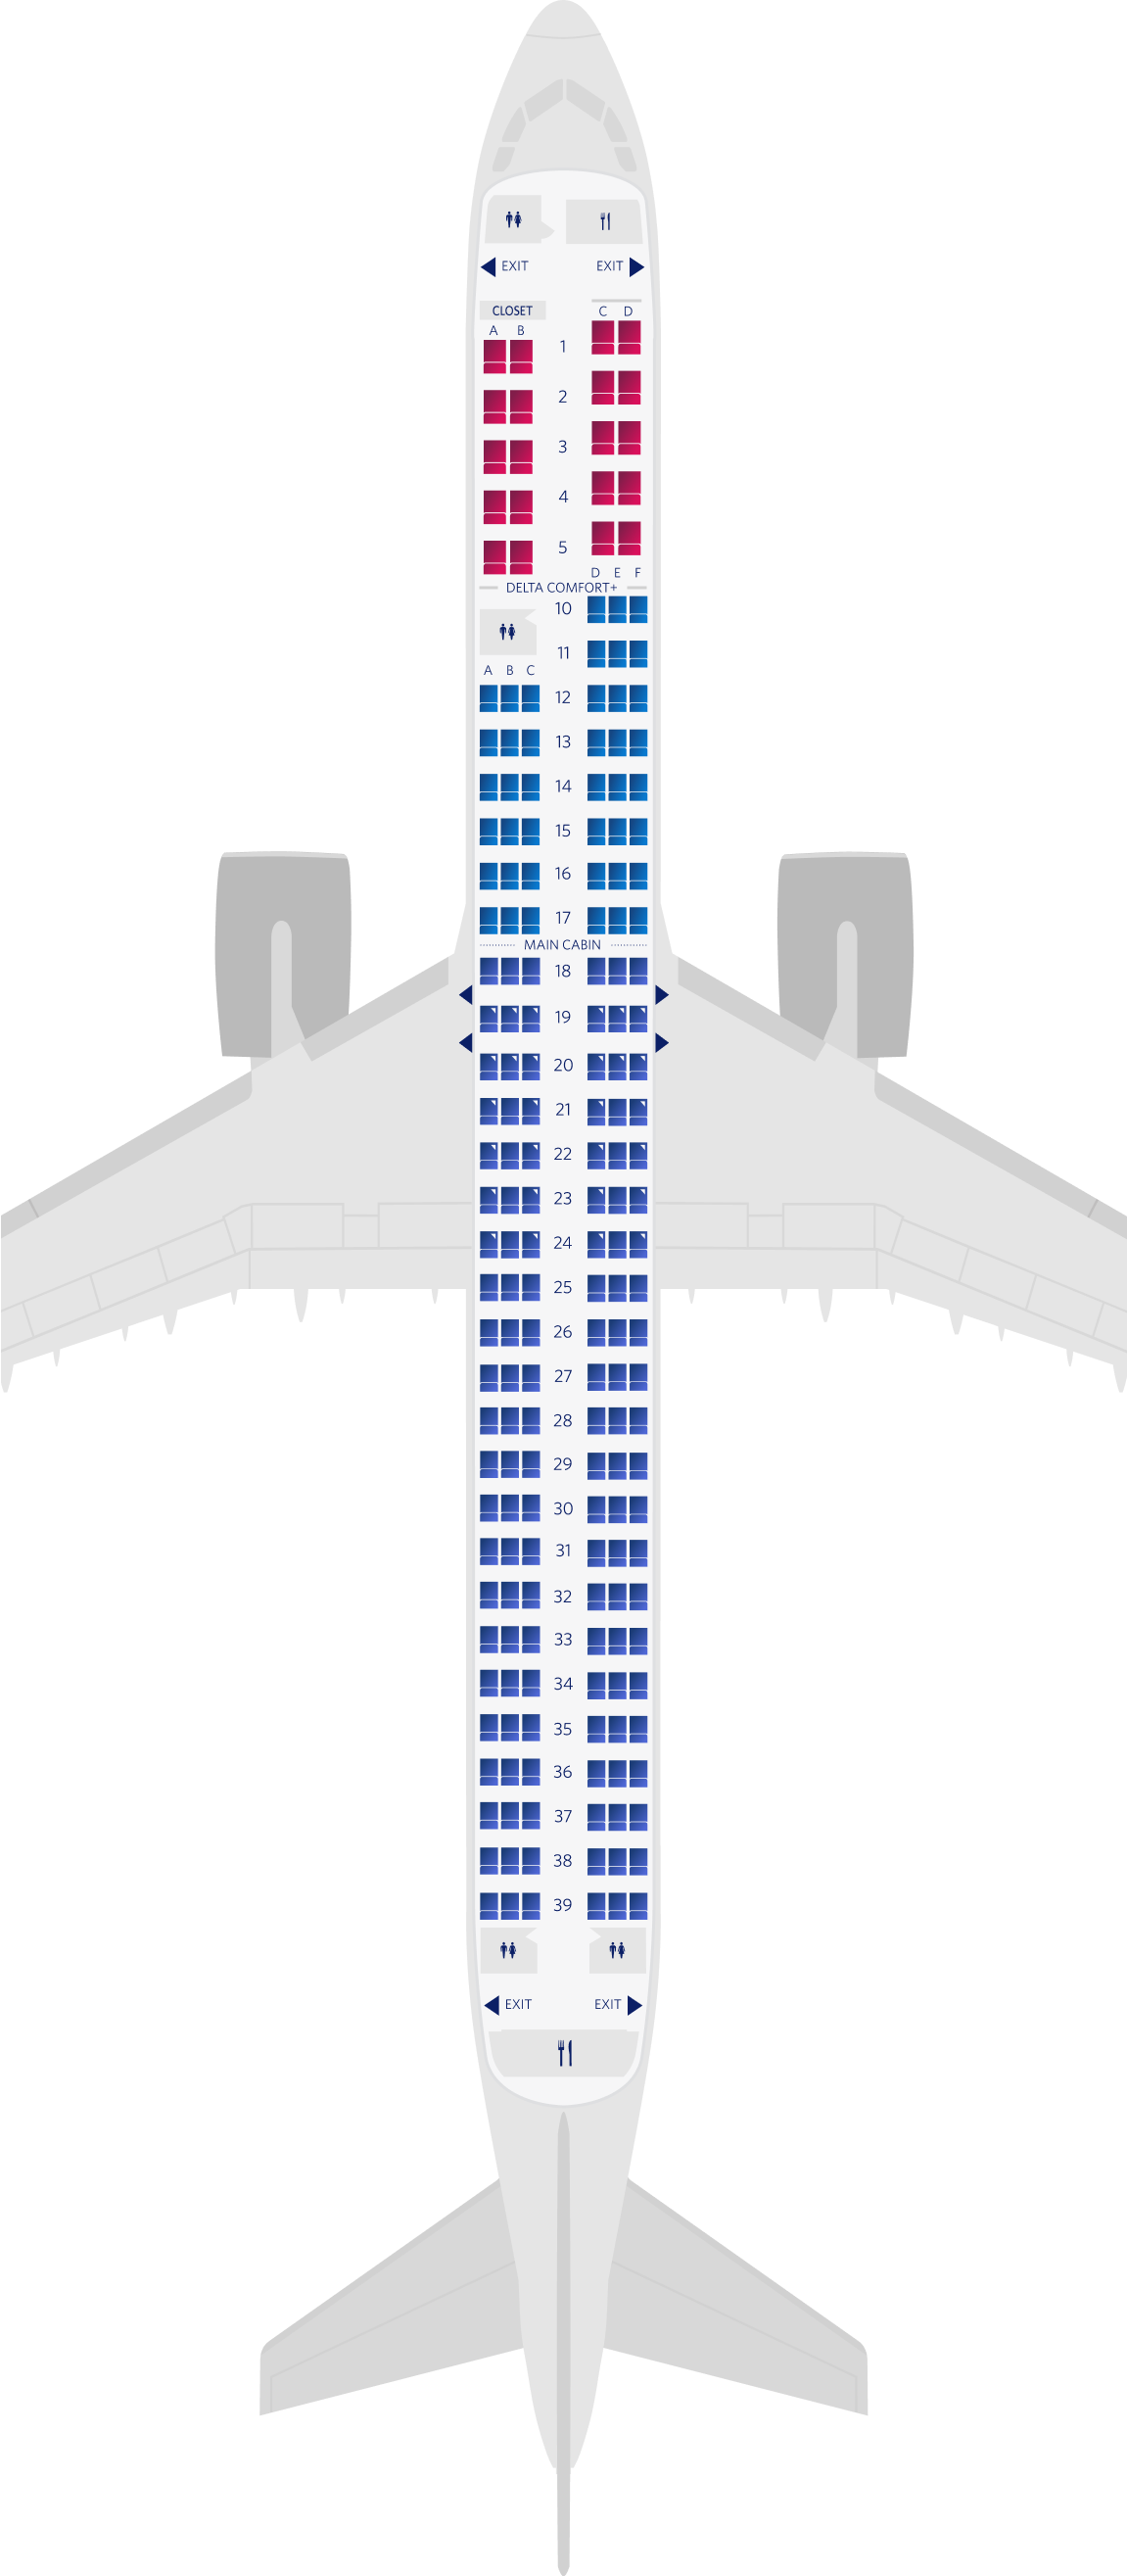 空客A321neo 3机舱座位图